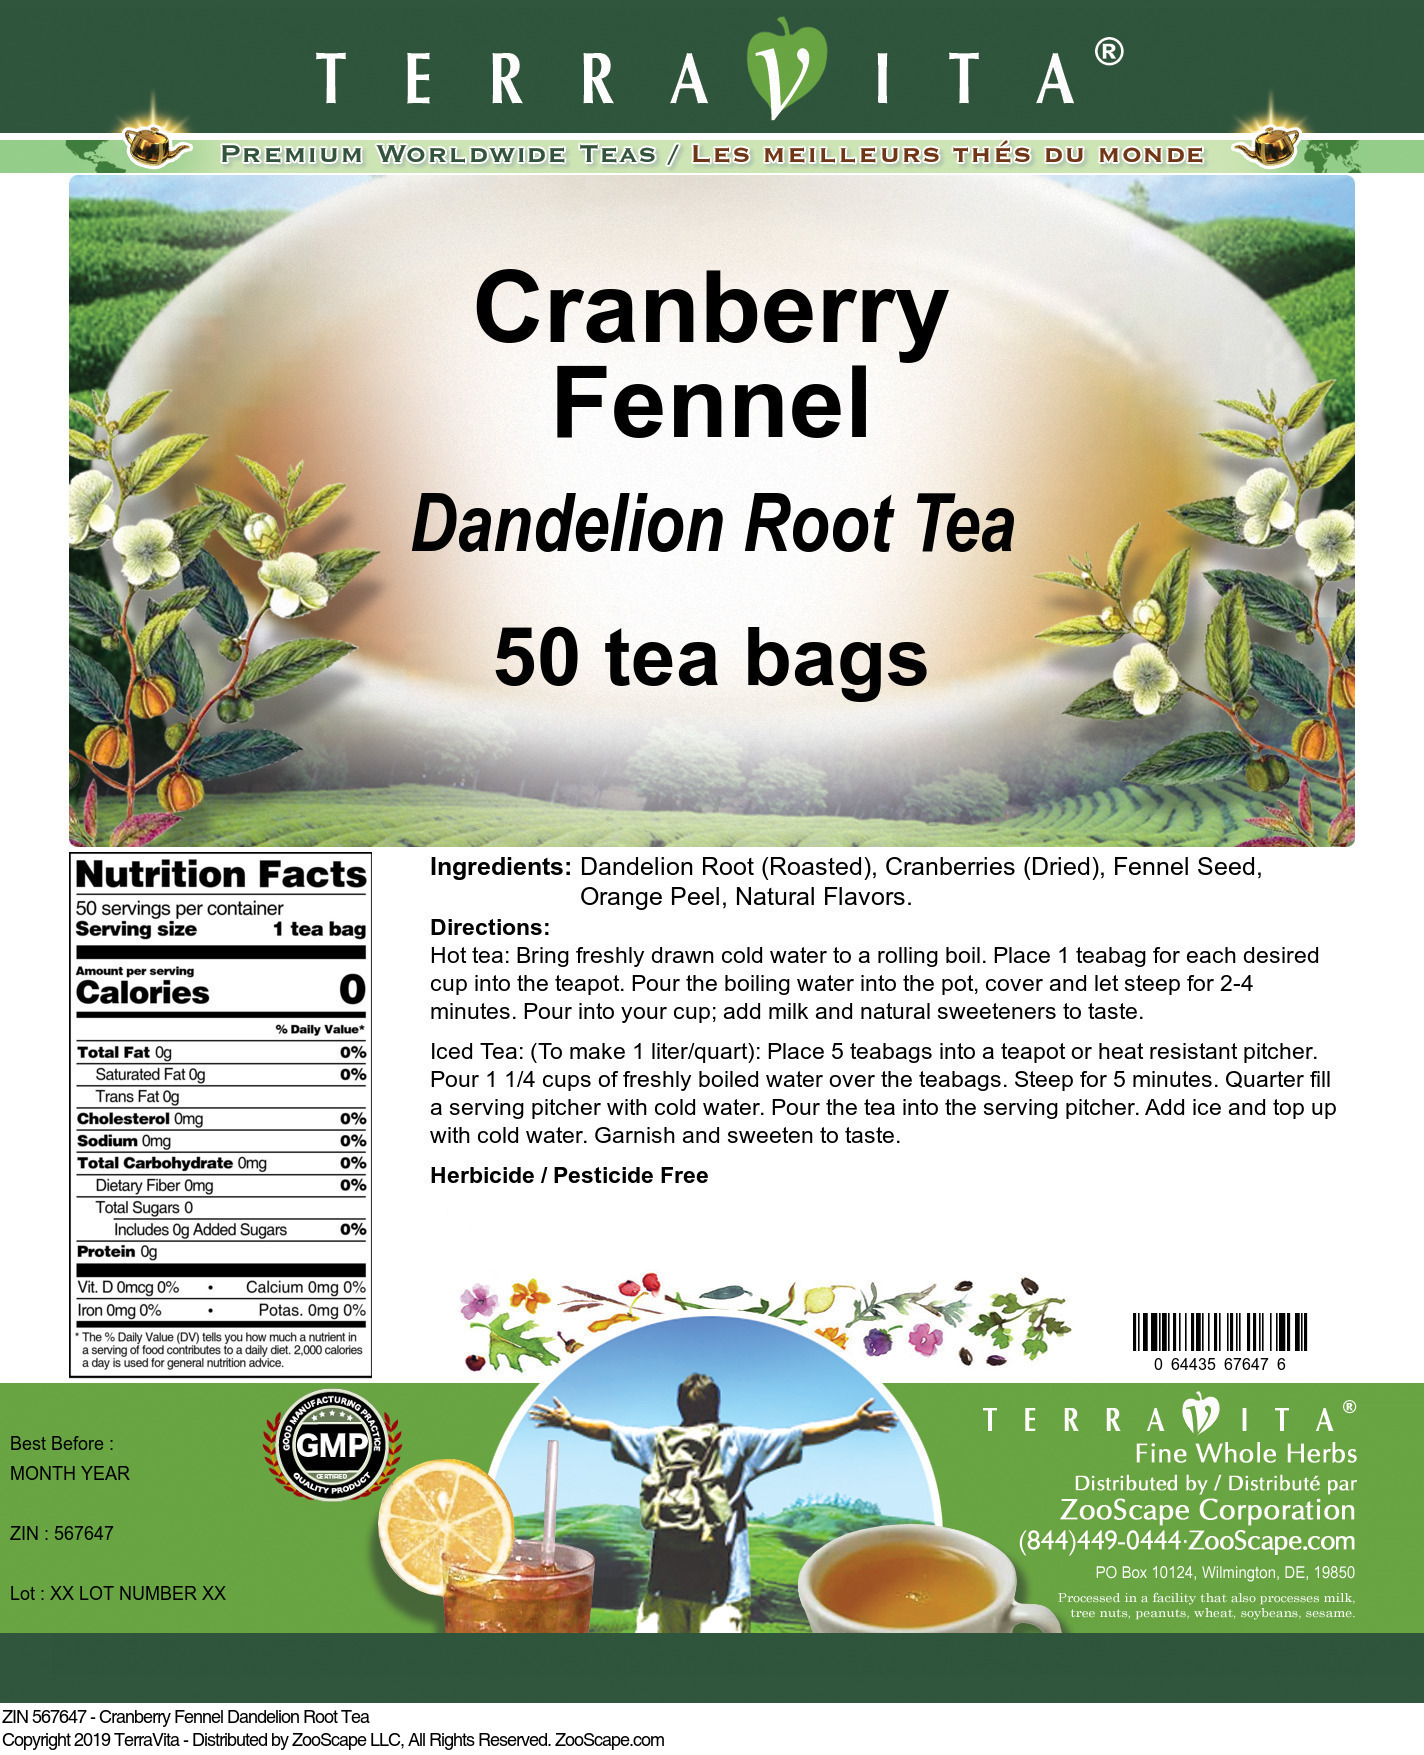 Cranberry Fennel Dandelion Root Tea - Label